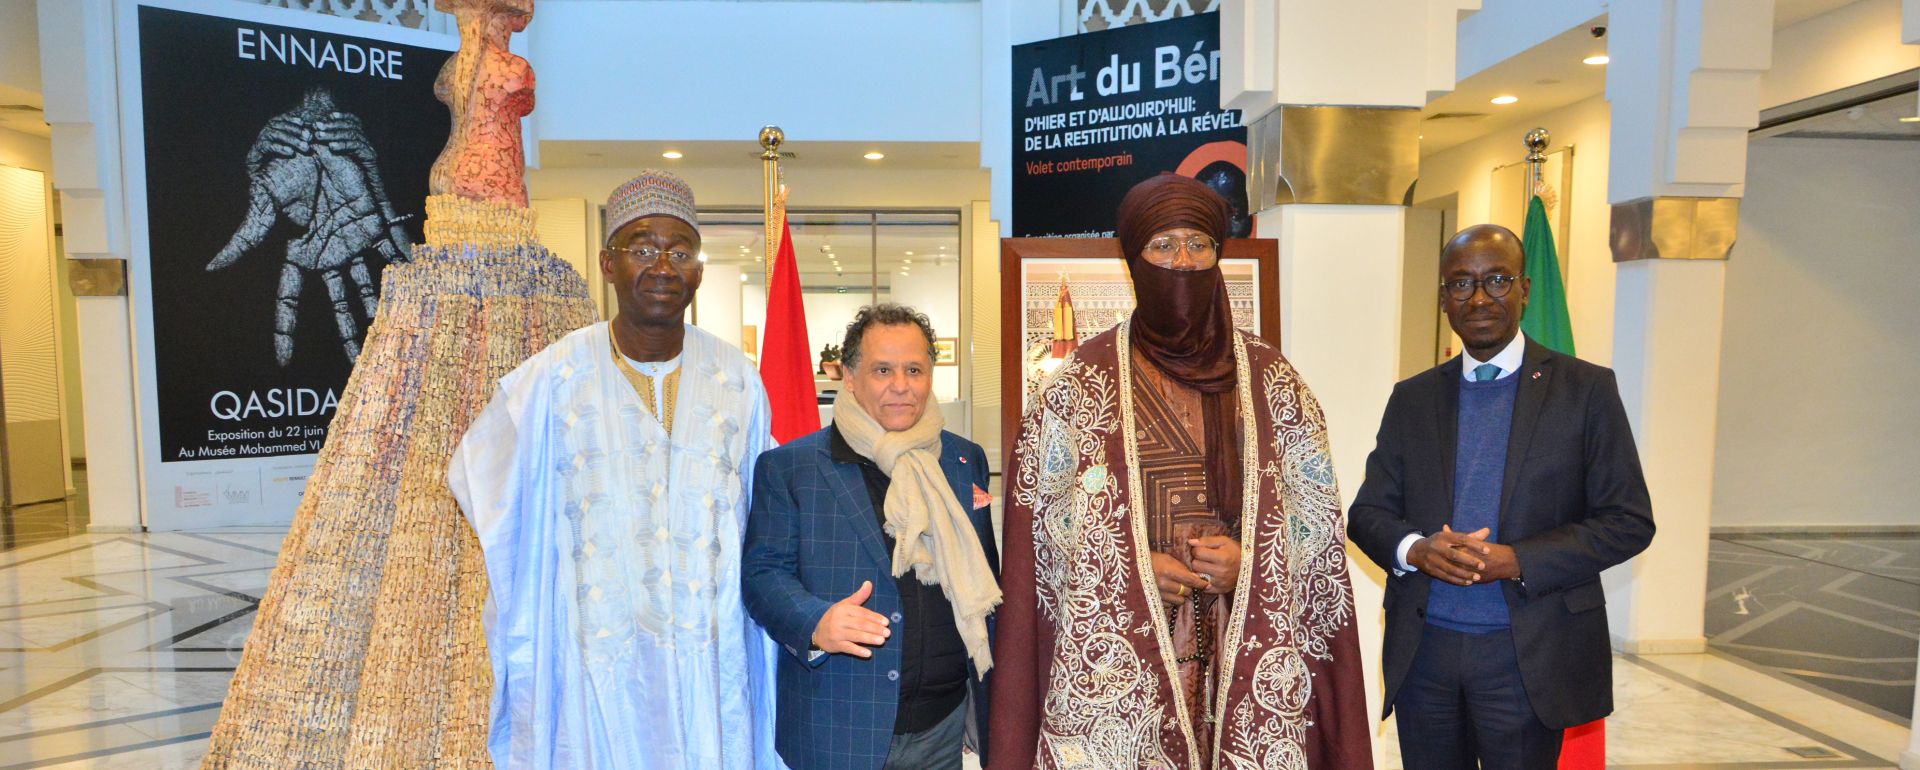 Vernissage de l’Exposition « Art du Bénin d’hier et d’aujourd’hui : de la Restitution à la révélation. Volet contemporain » à Rabat, Maroc